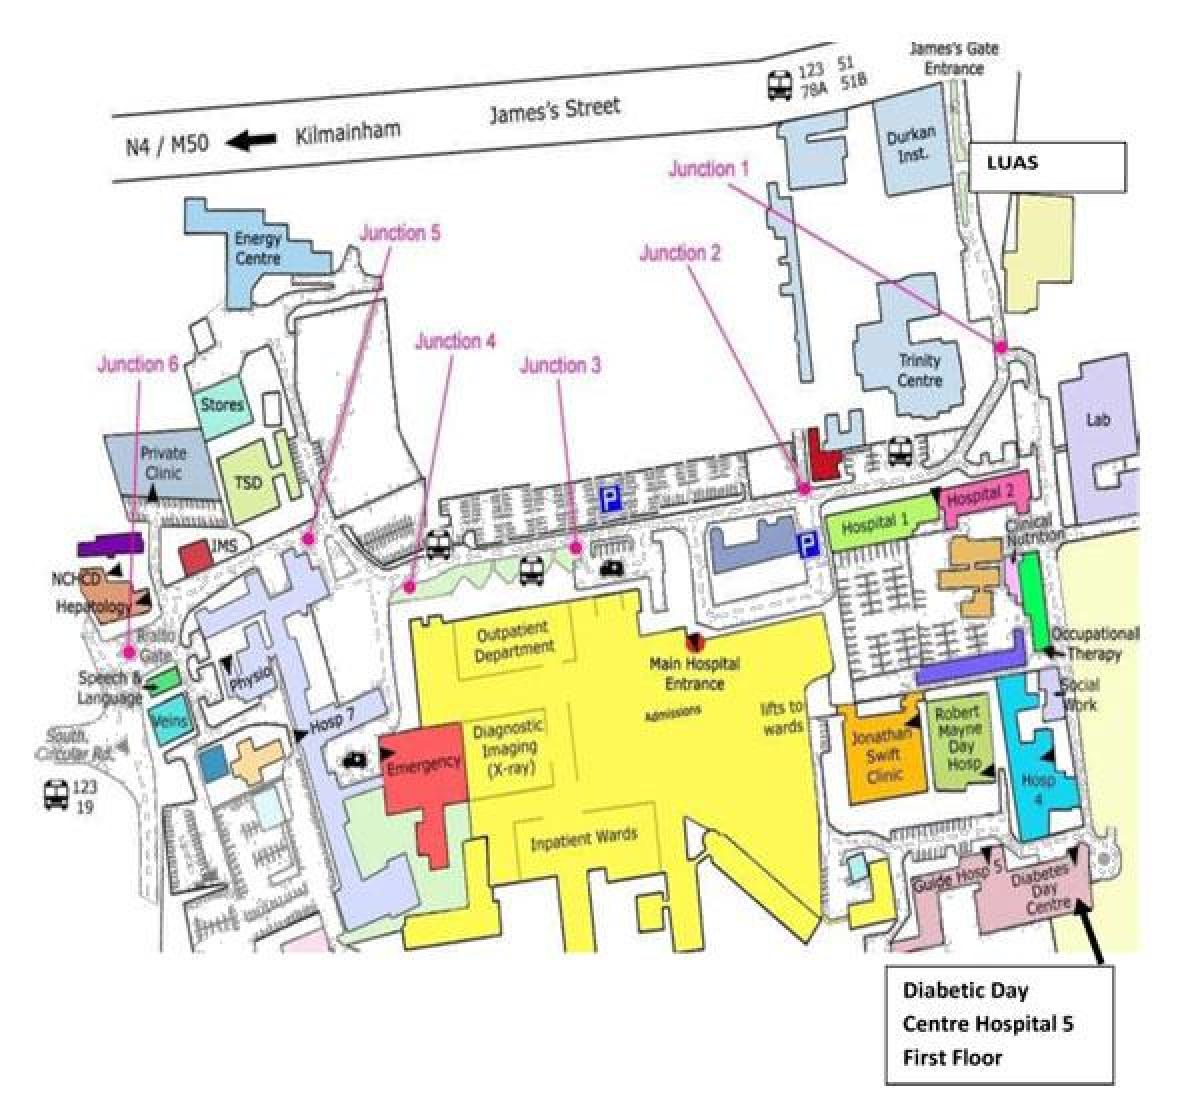 St James საავადმყოფოში დუბლინი რუკა